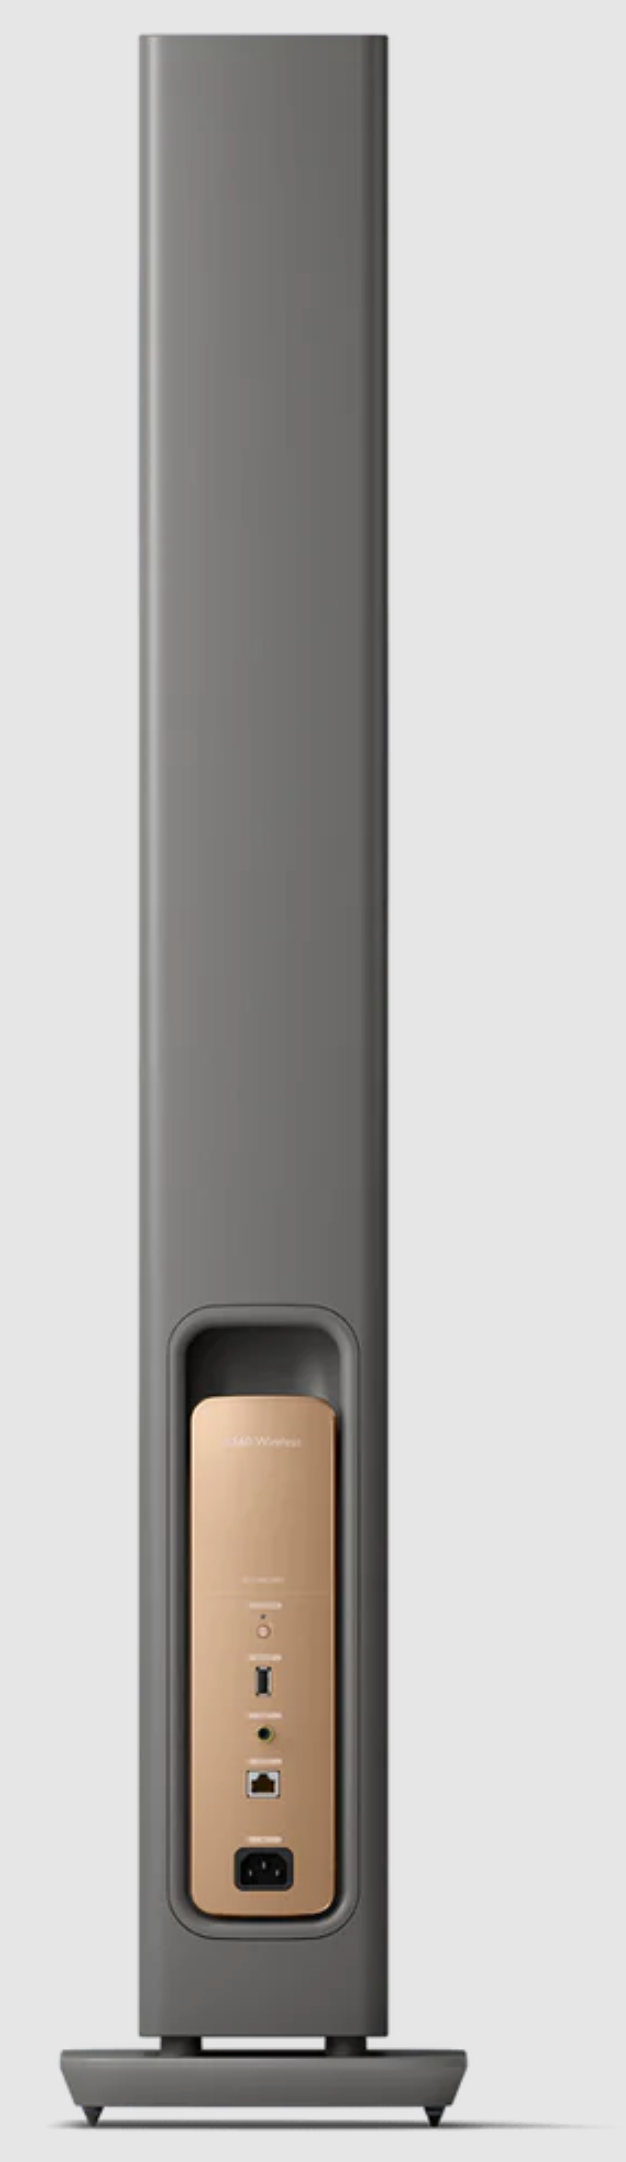 KEF LS60 Wireless Floorstanding Speakers Speakers in Titanium Gray. Individual speaker back image